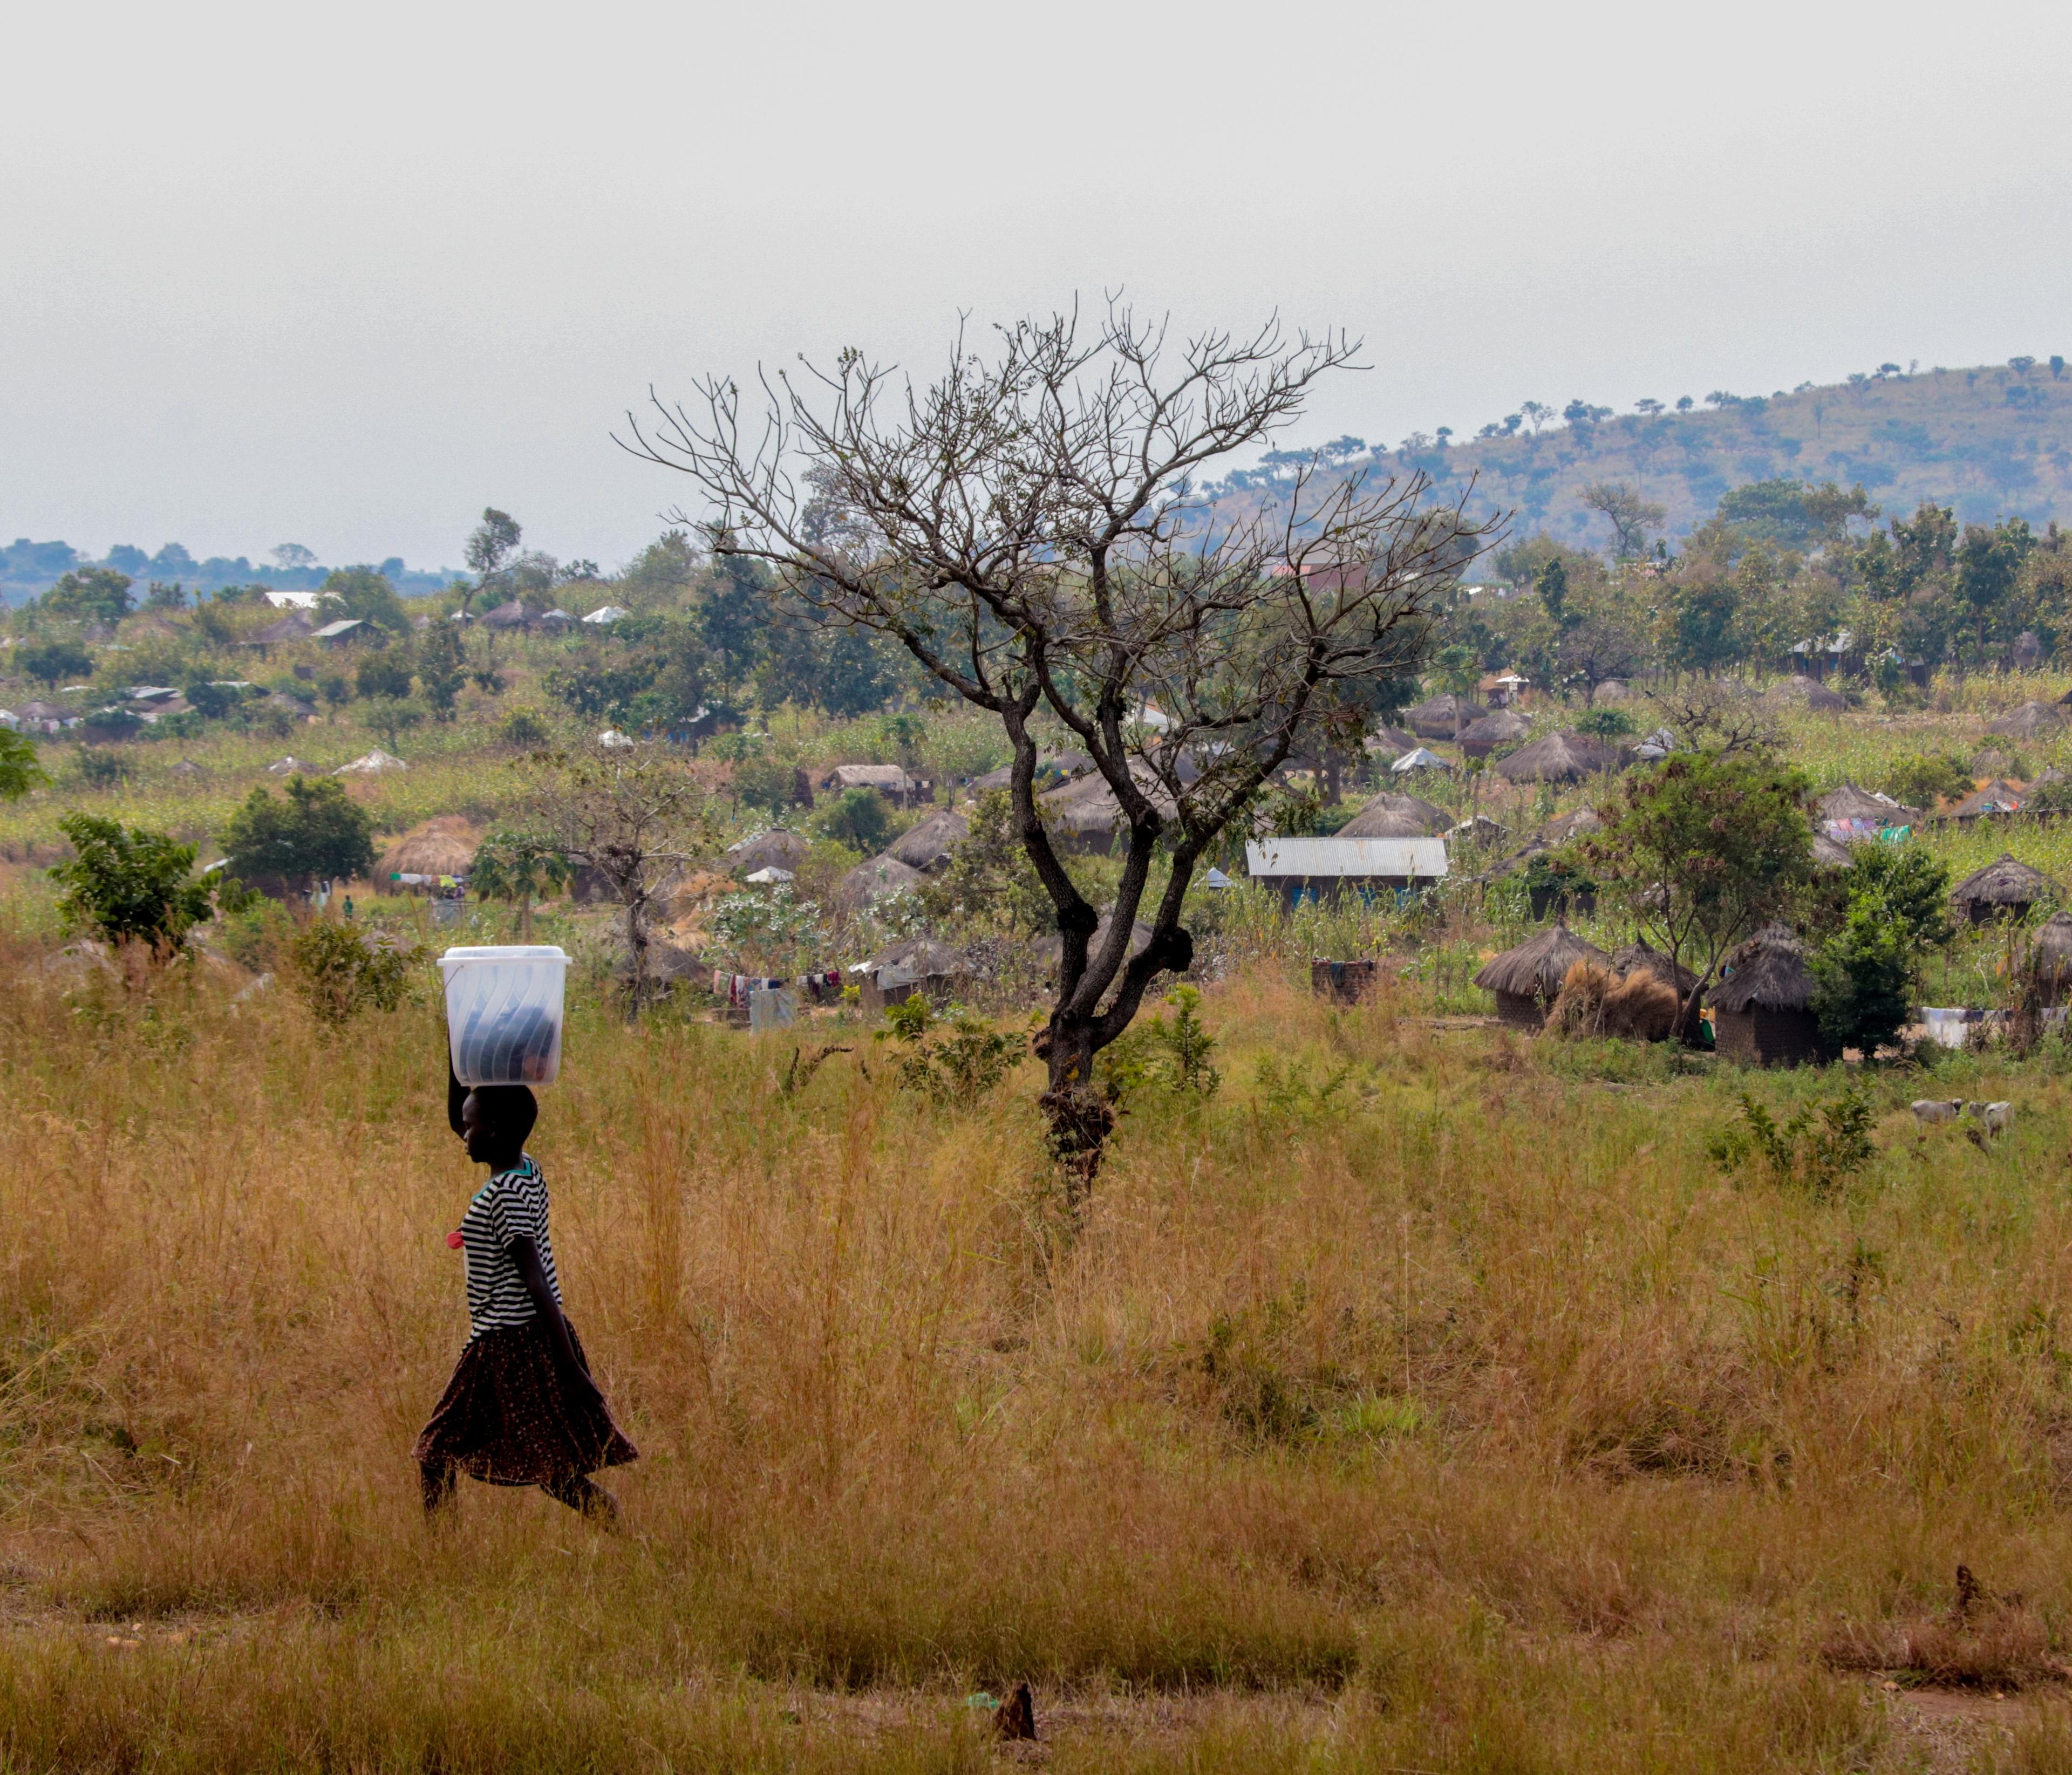 krajobraz Ugandy, trawy i pojedyncze drzewa, ścieżką idzie kobieta i niesie na głowie bagaż